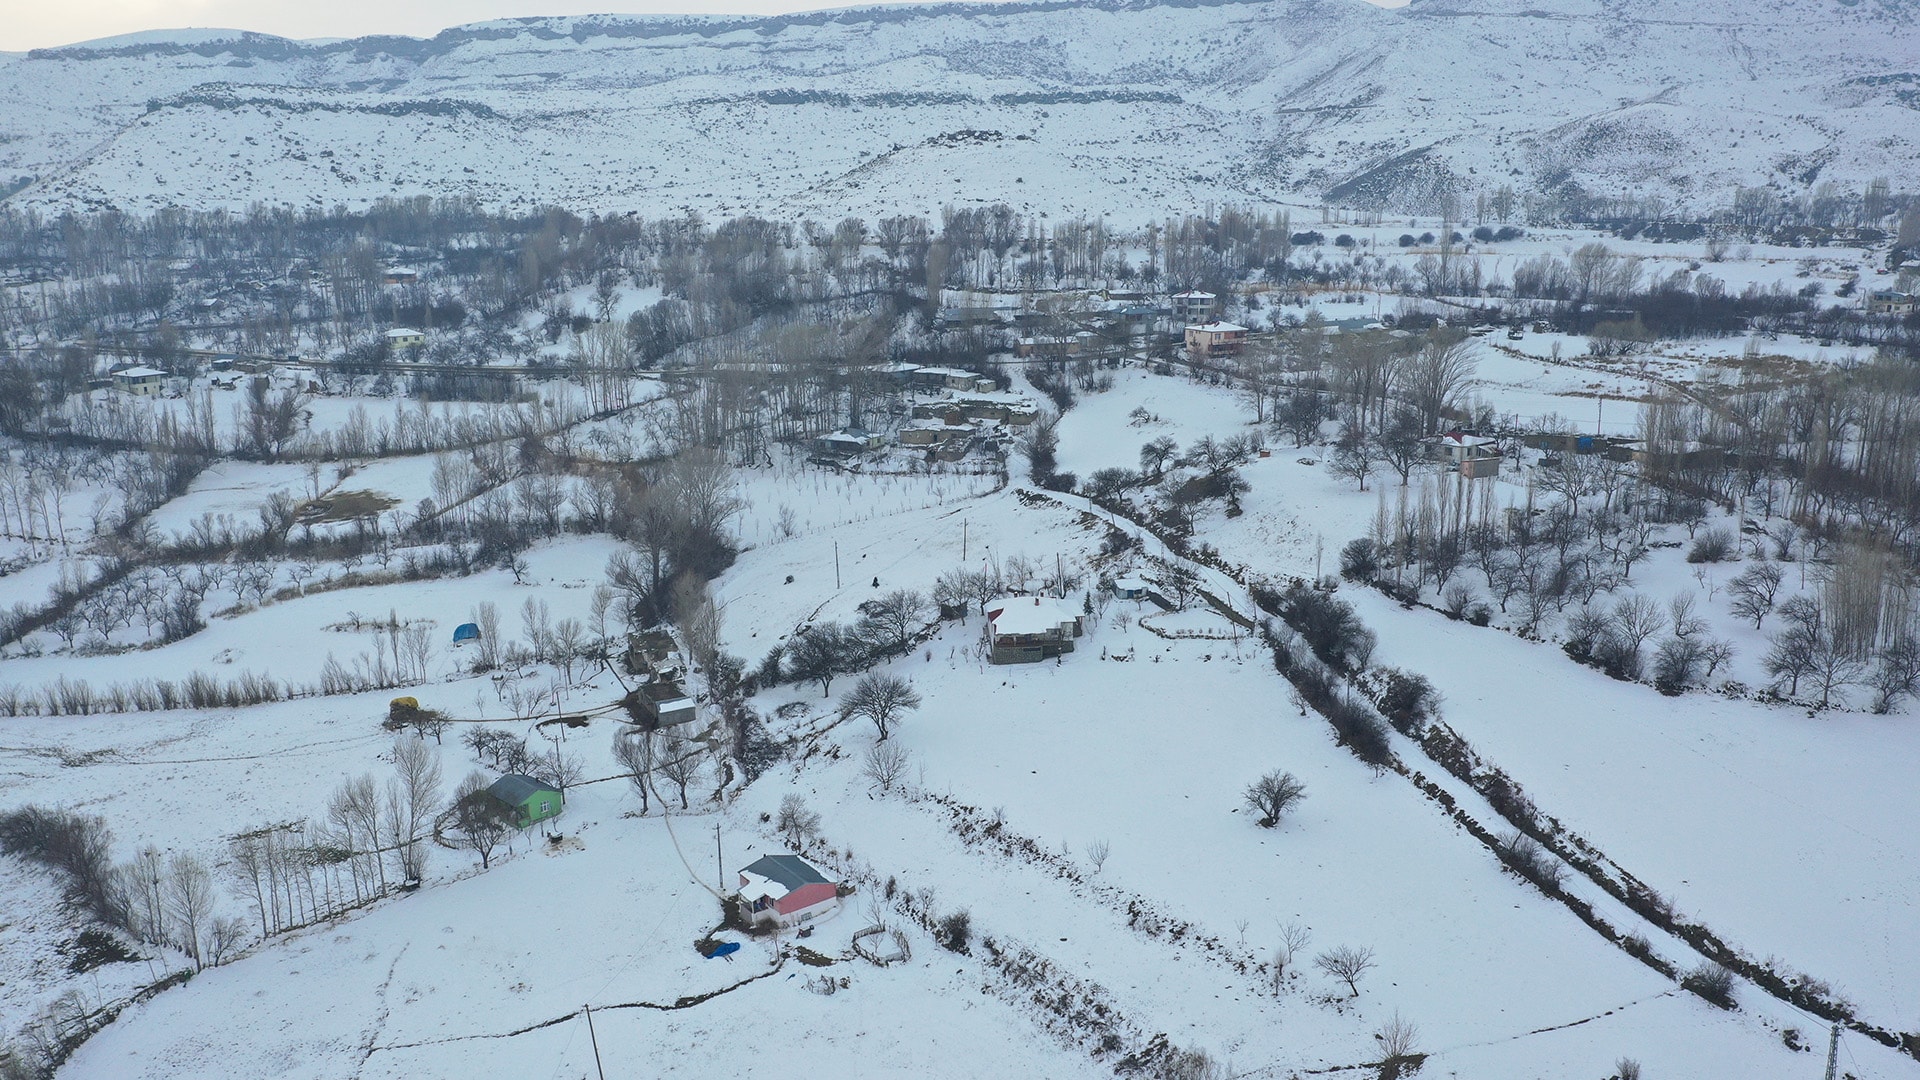 Iğdır'ın dağ köylerinde kış zorlu geçiyor